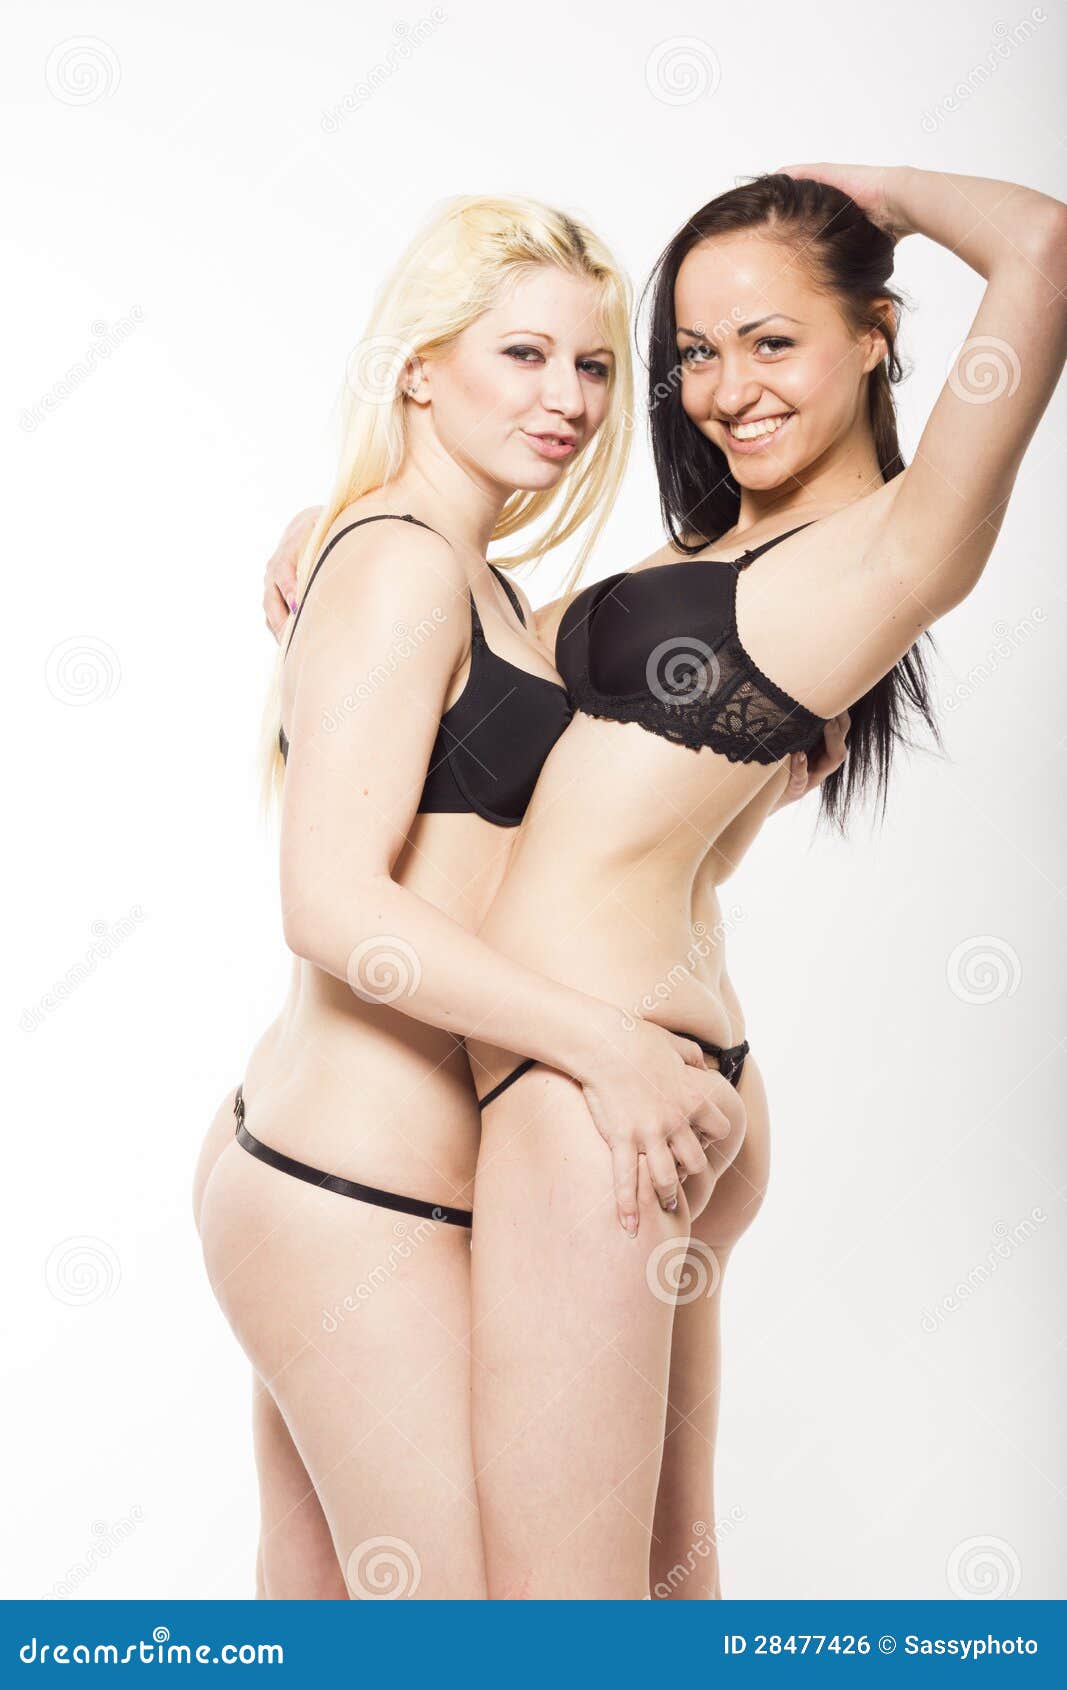 Lesbian Micro Bikini